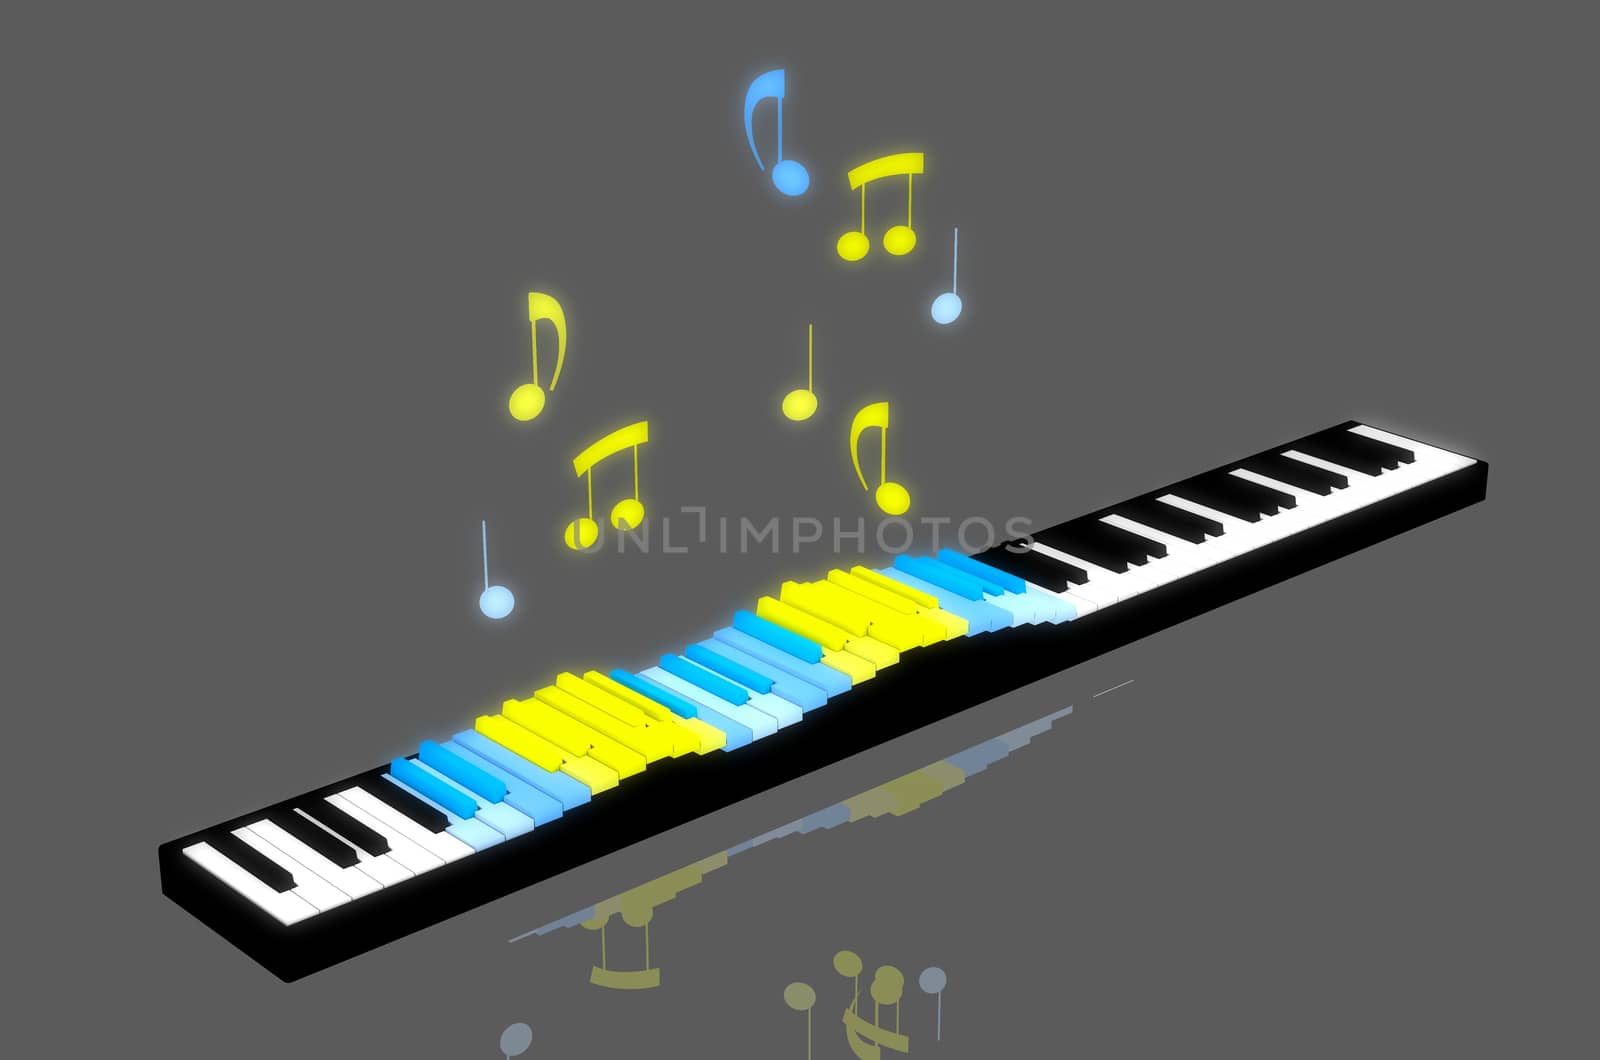 Piano keys by morskaja